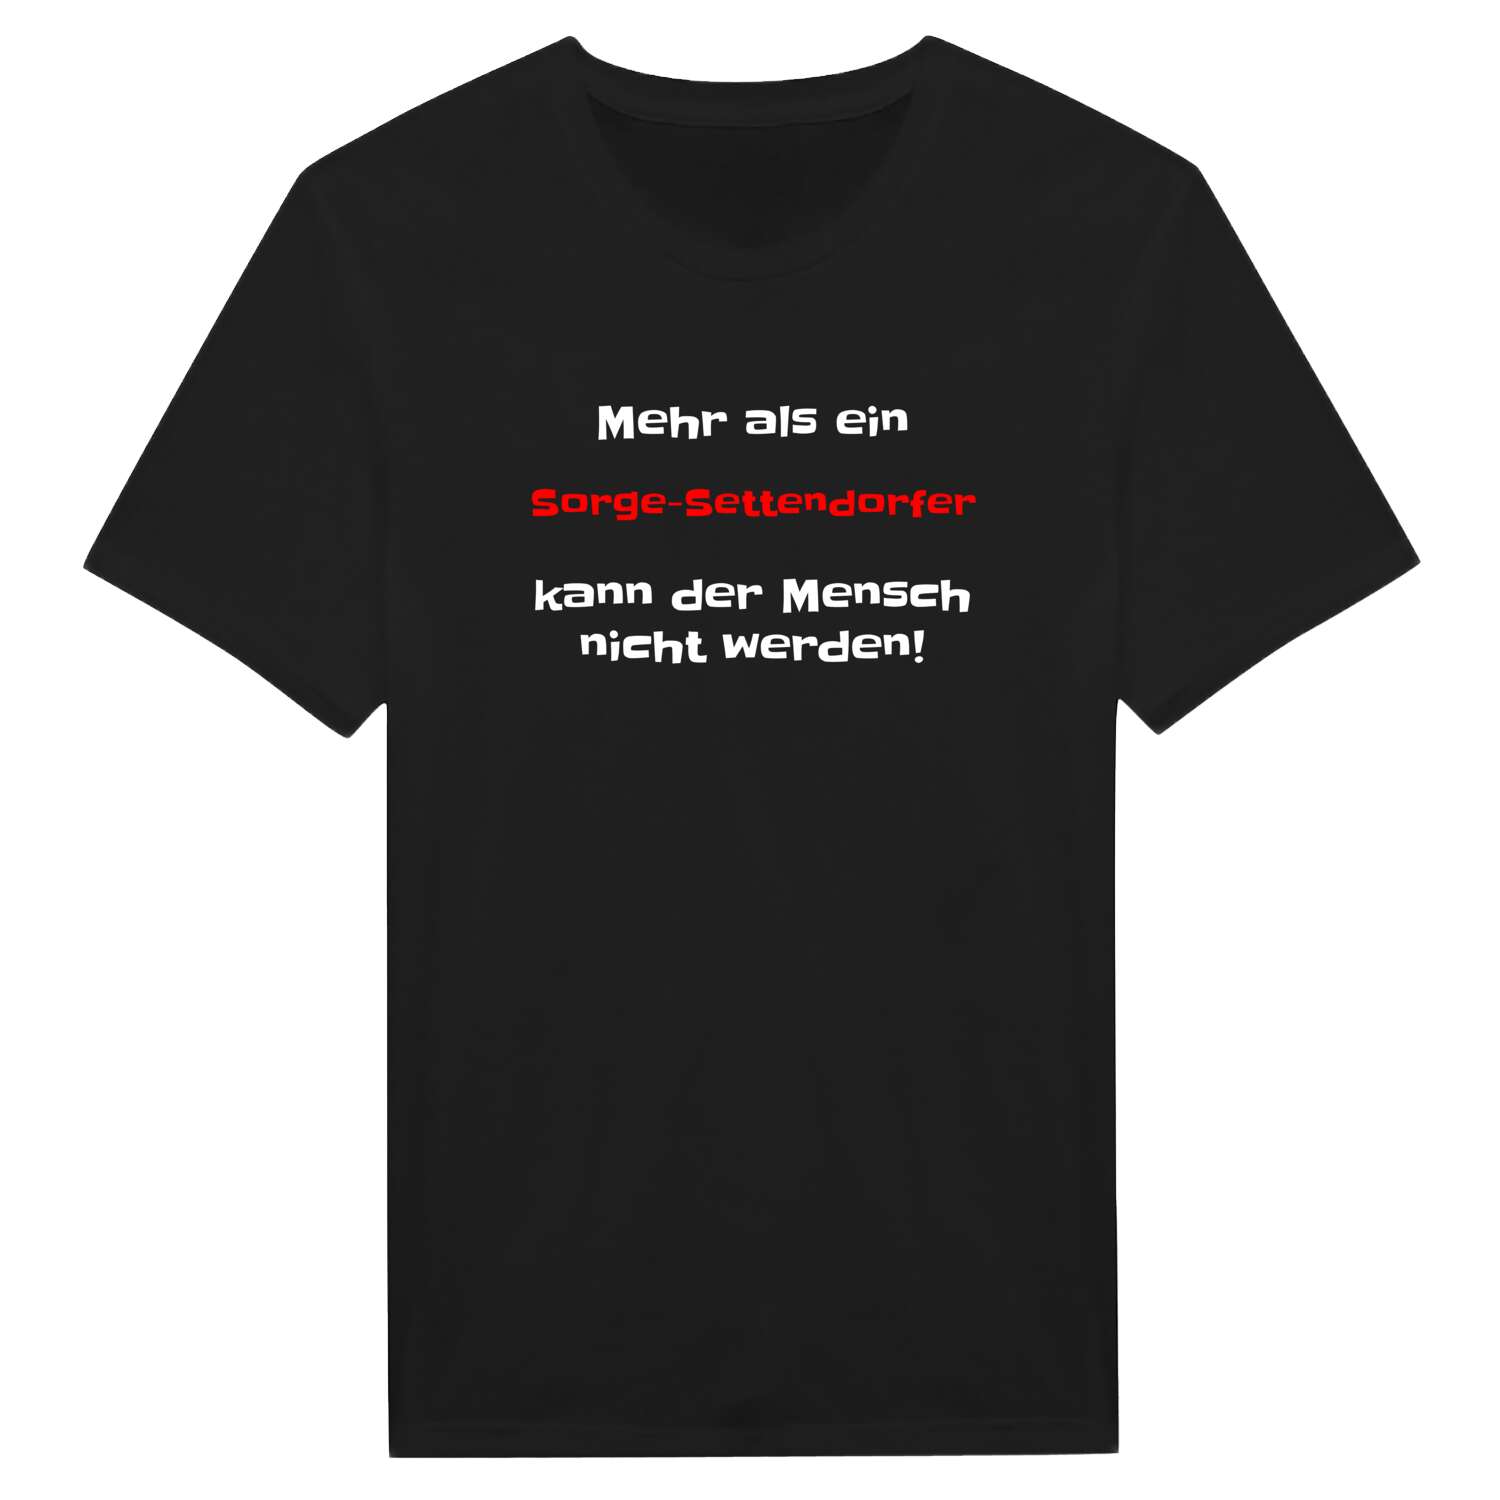 Sorge-Settendorf T-Shirt »Mehr als ein«